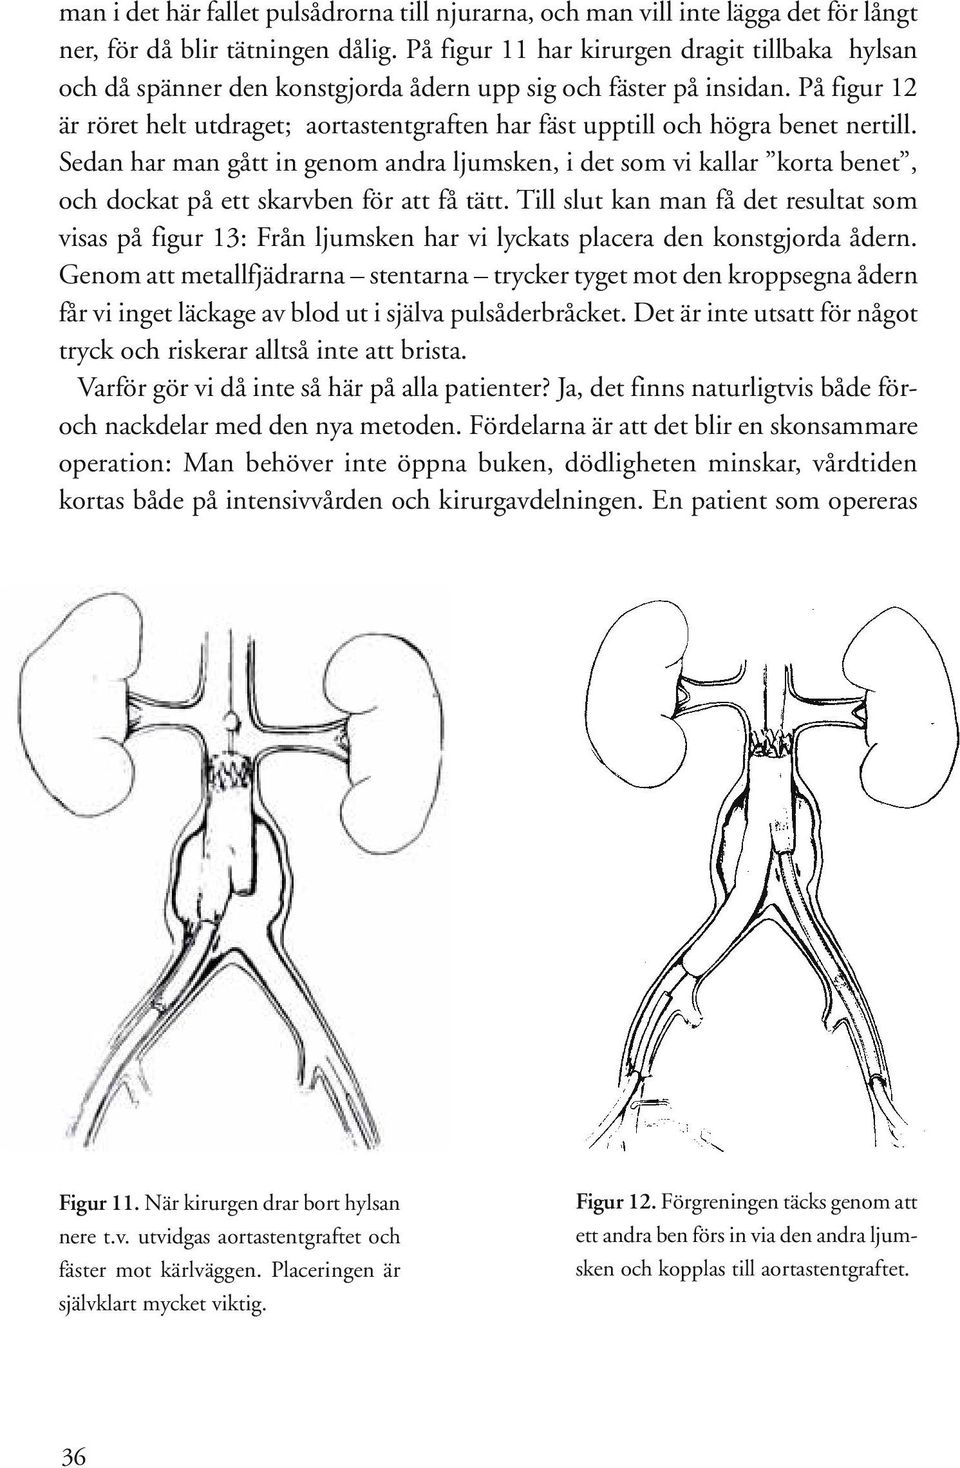 På figur 12 är röret helt utdraget; aortastentgraften har fäst upptill och högra benet nertill.